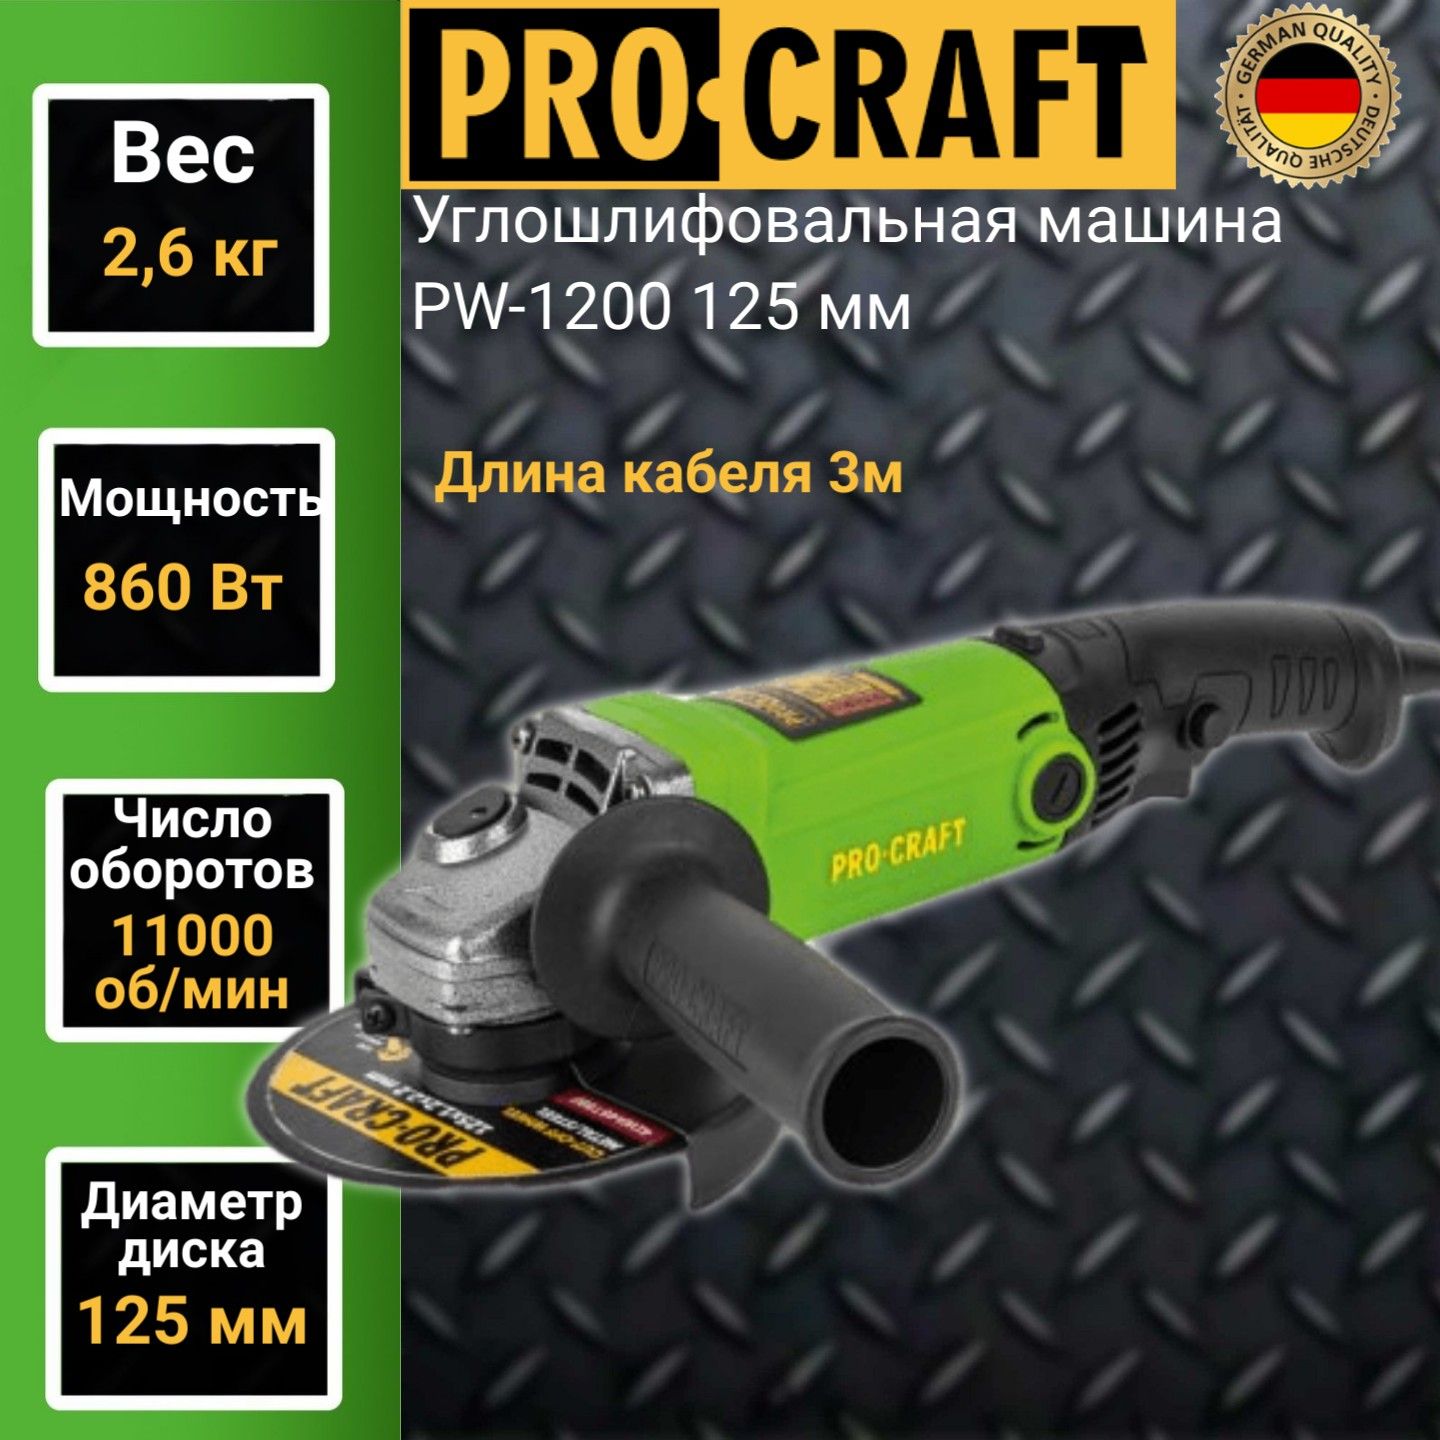 Углошлифовальная машина болгарка Procraft PW1200, 125мм круг, 860Вт, 11000об/мин